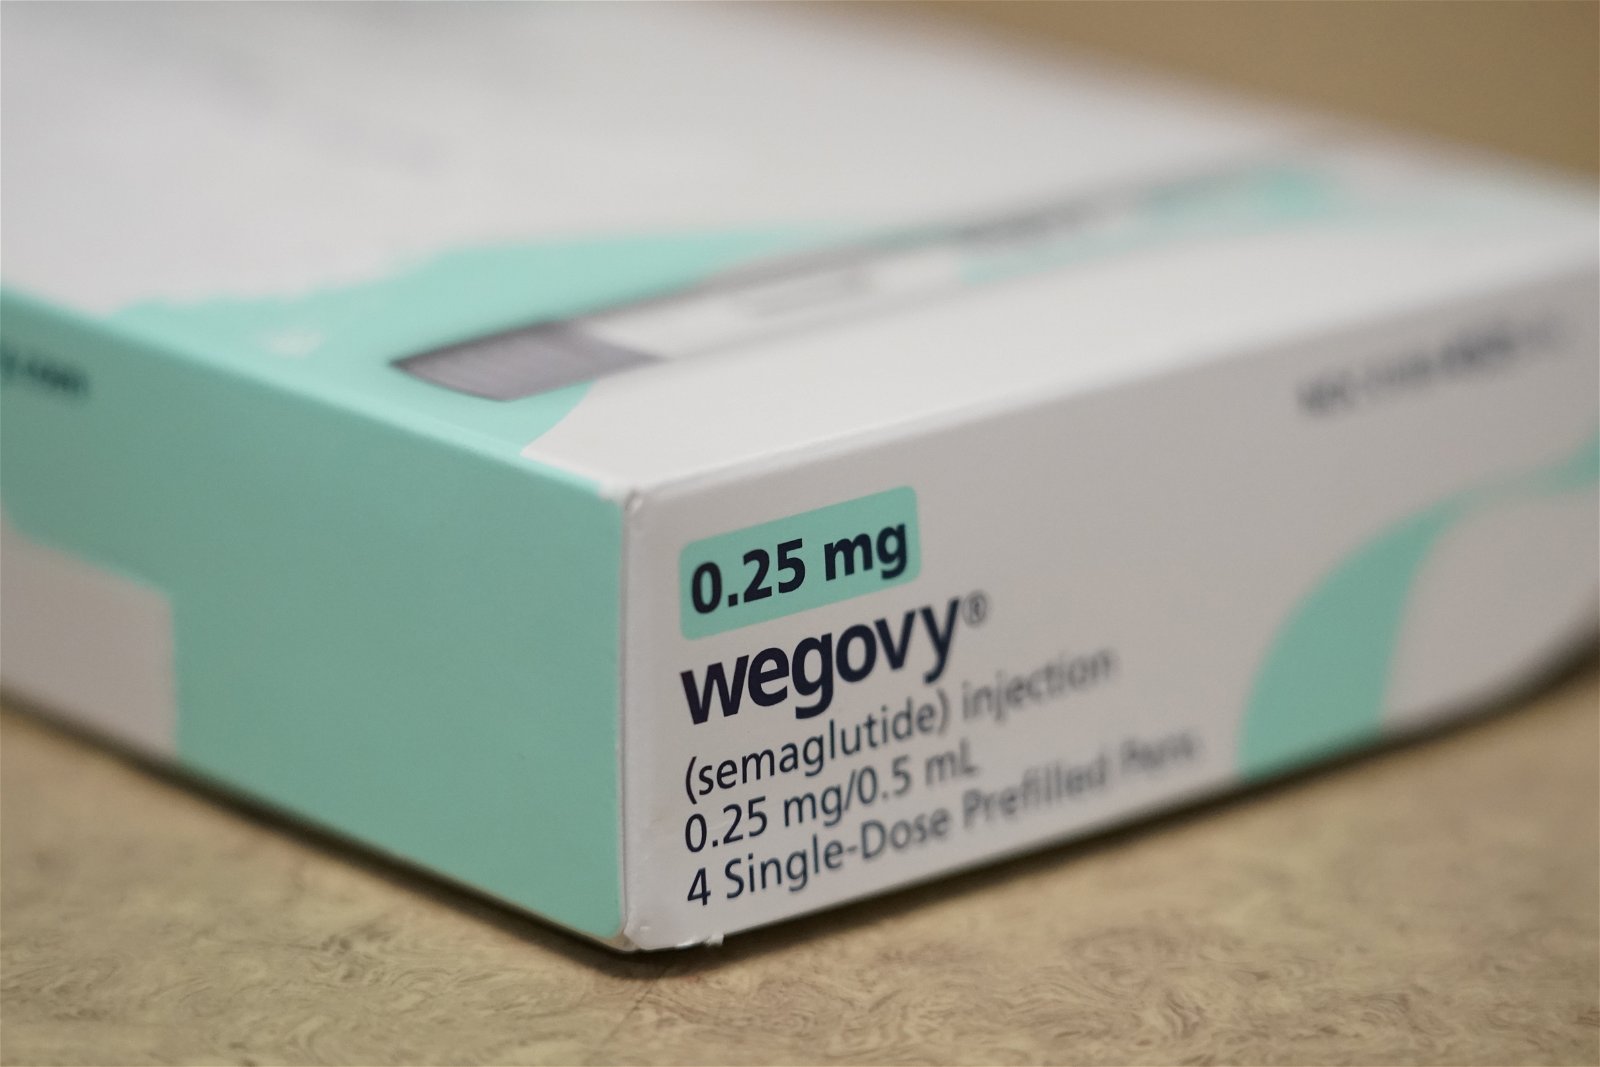 Problemi dietetici: come funzionano le pillole dimagranti Ozempic e Wegovy?